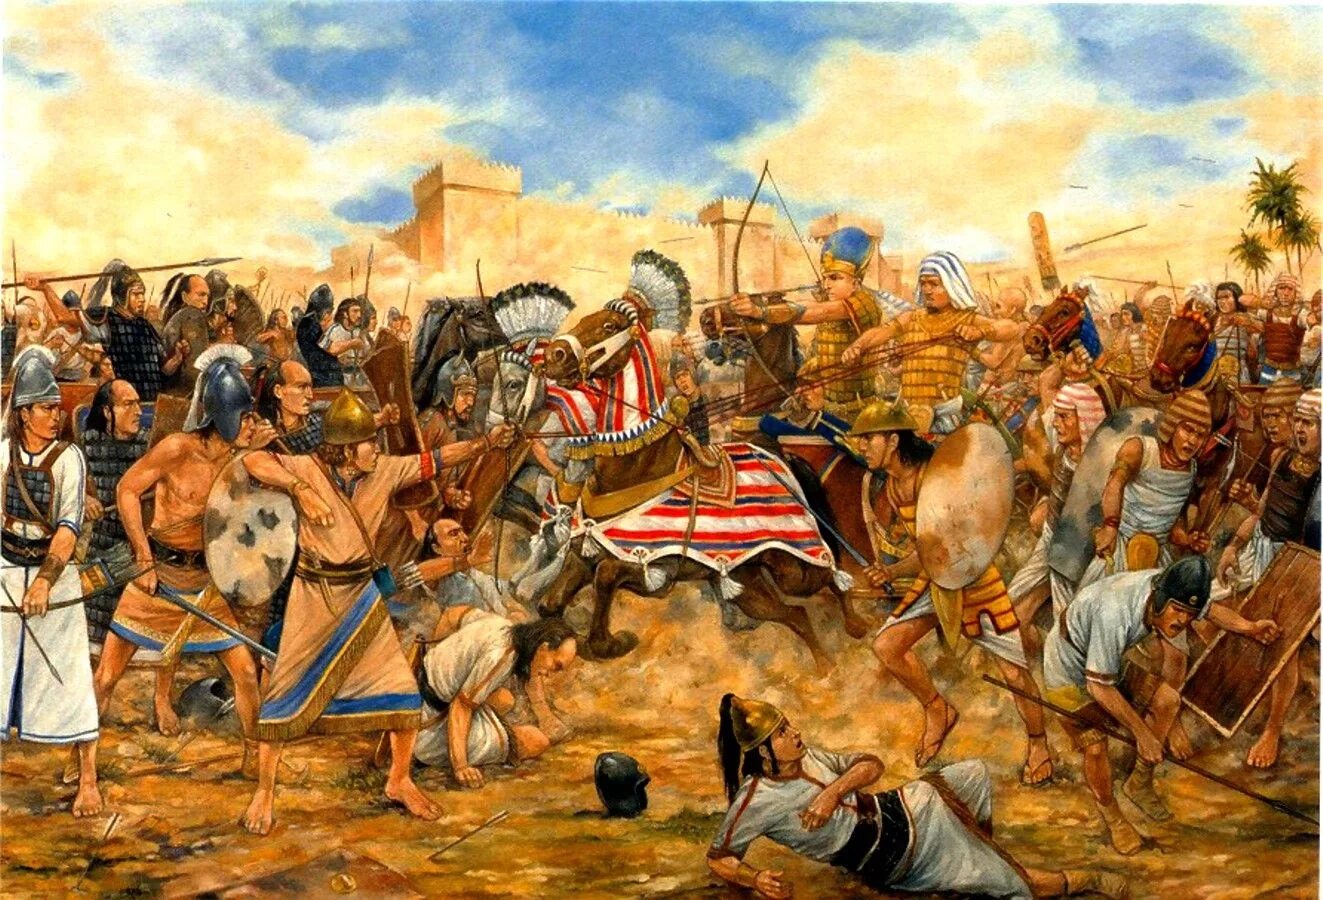 Самый древний народ египта. Битва при Кадеше древний Египет. Битва в Кадеше. Битва египтян с хеттами при Кадеше. Битва при Мегиддо 1457 до н э.